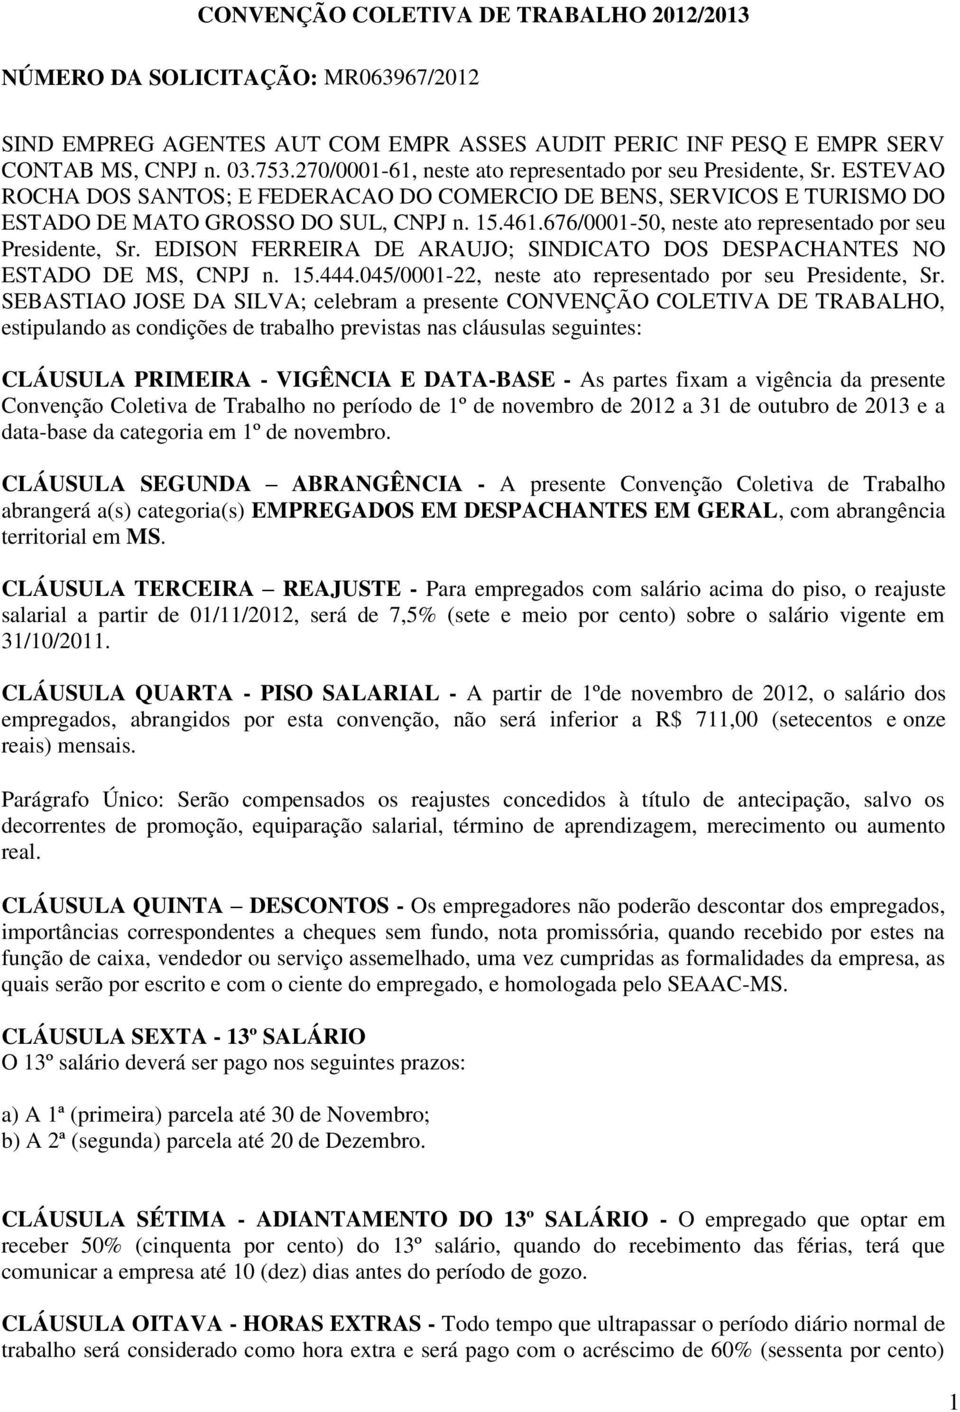 676/0001-50, neste ato representado por seu Presidente, Sr. EDISON FERREIRA DE ARAUJO; SINDICATO DOS DESPACHANTES NO ESTADO DE MS, CNPJ n. 15.444.